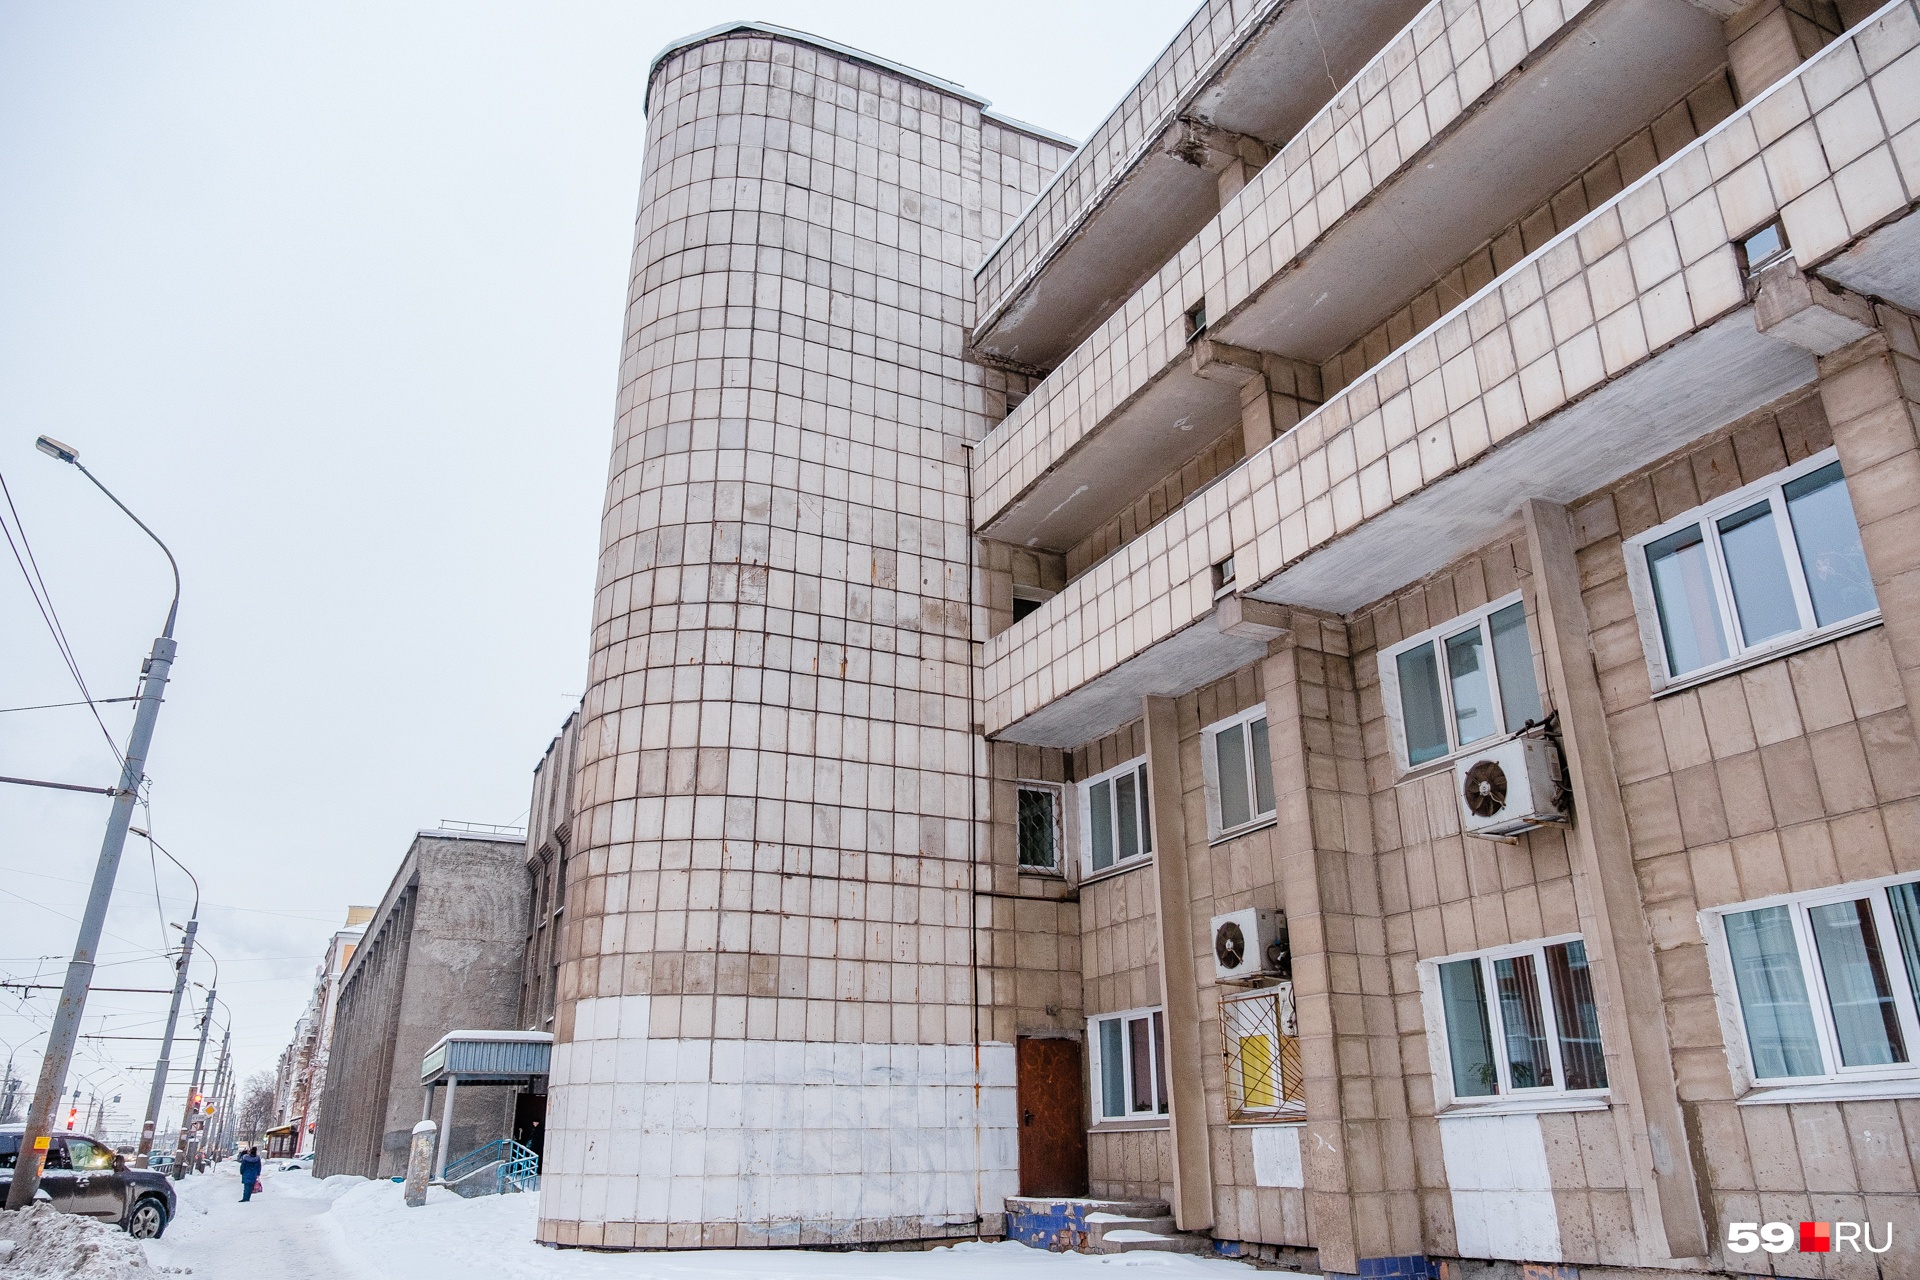 Эта больничная постройка позднего времени также имитирует геометризм советской архитектуры